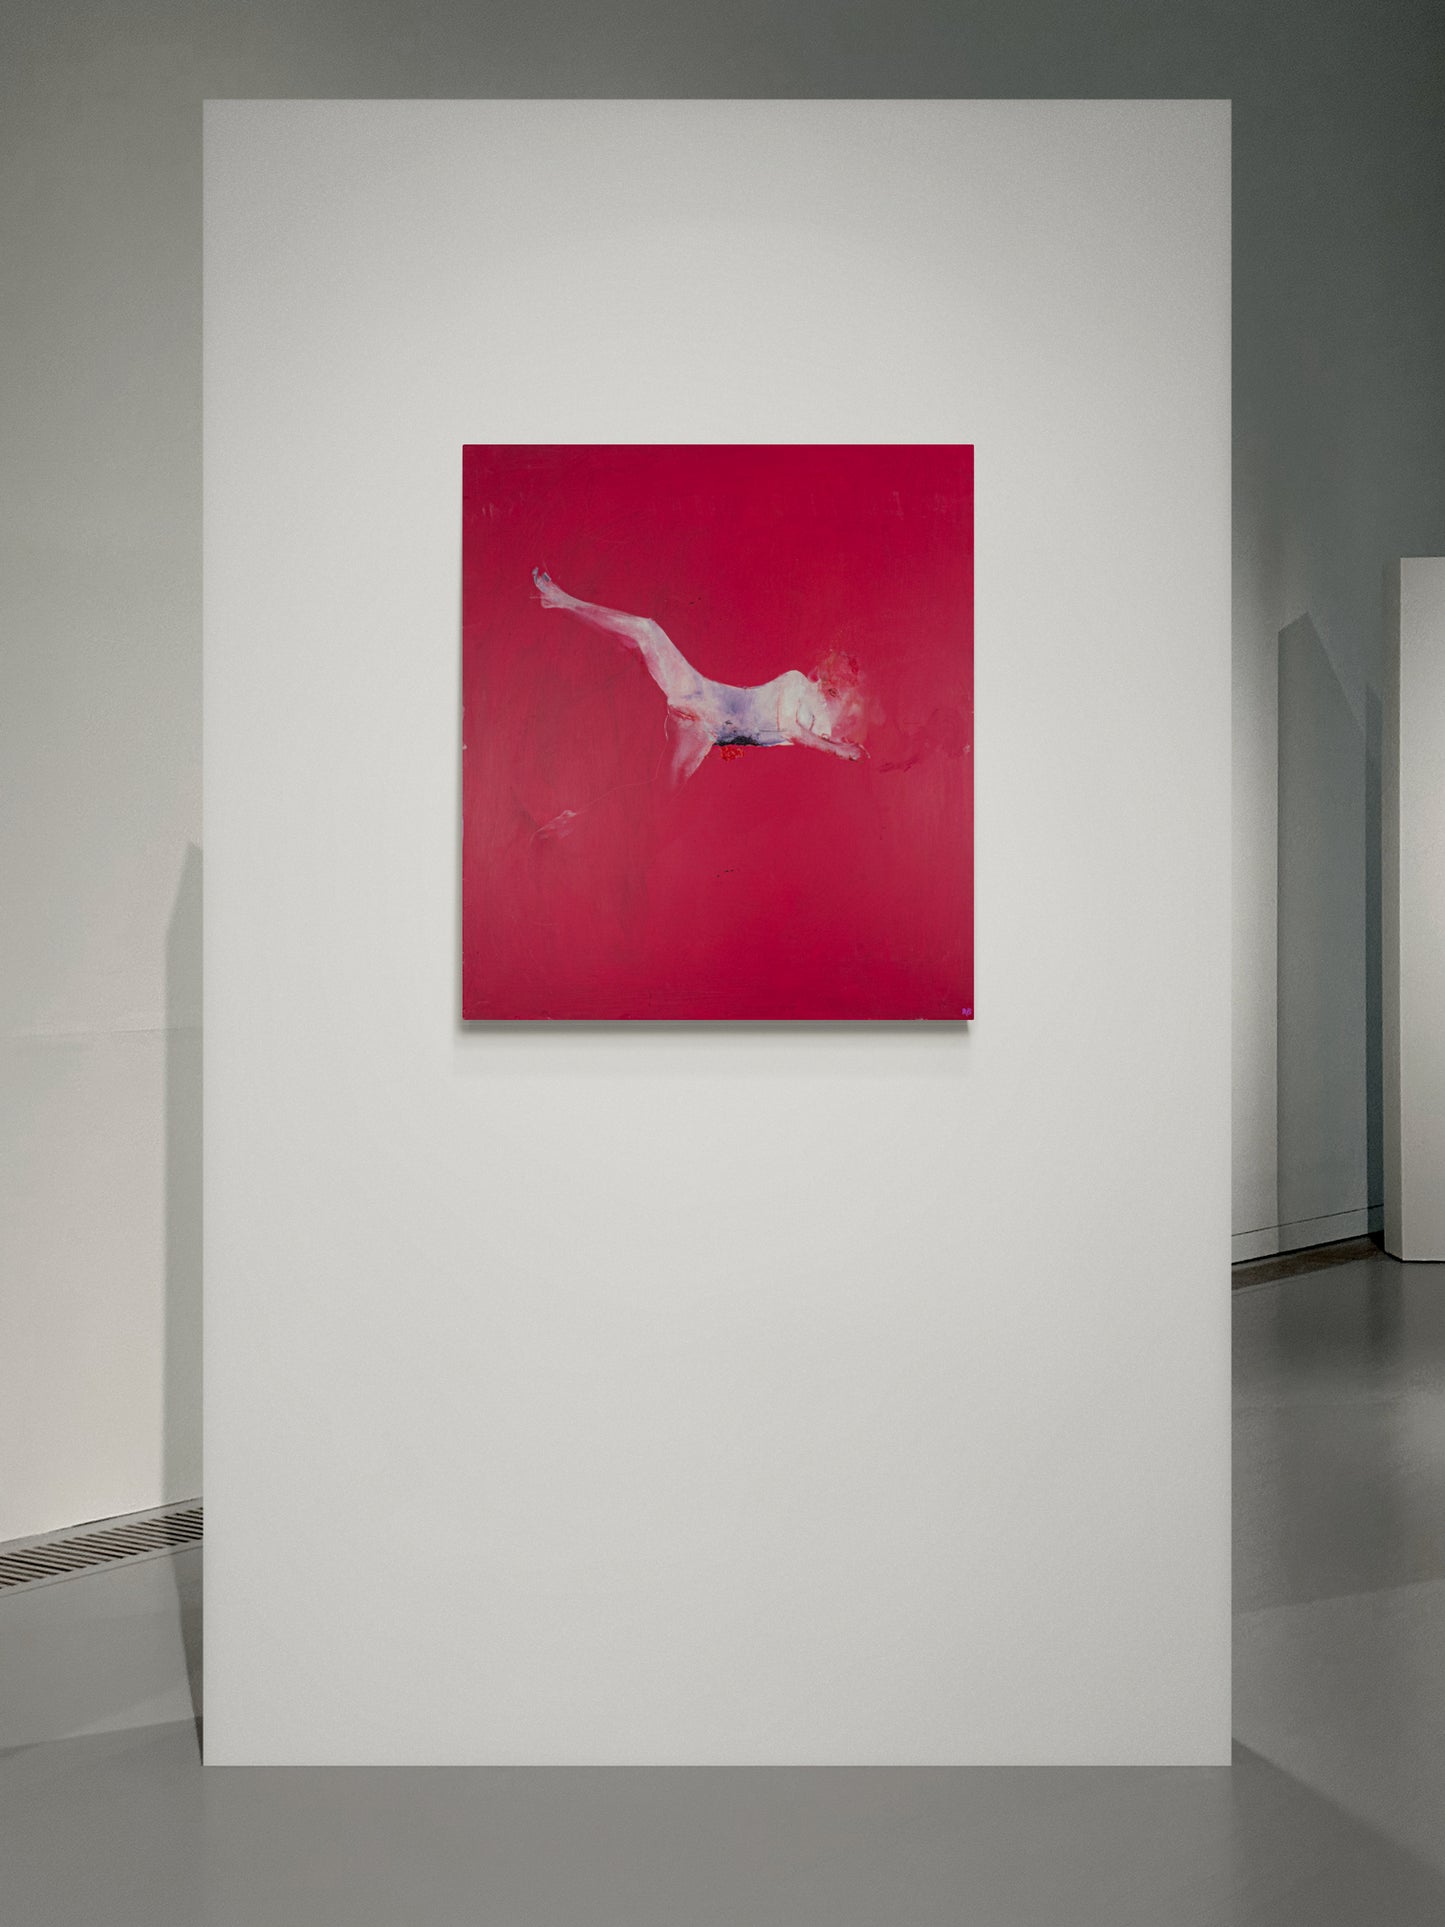 Renato Bertini - “Ricordo di Amburgo” (90 x 80 cm)